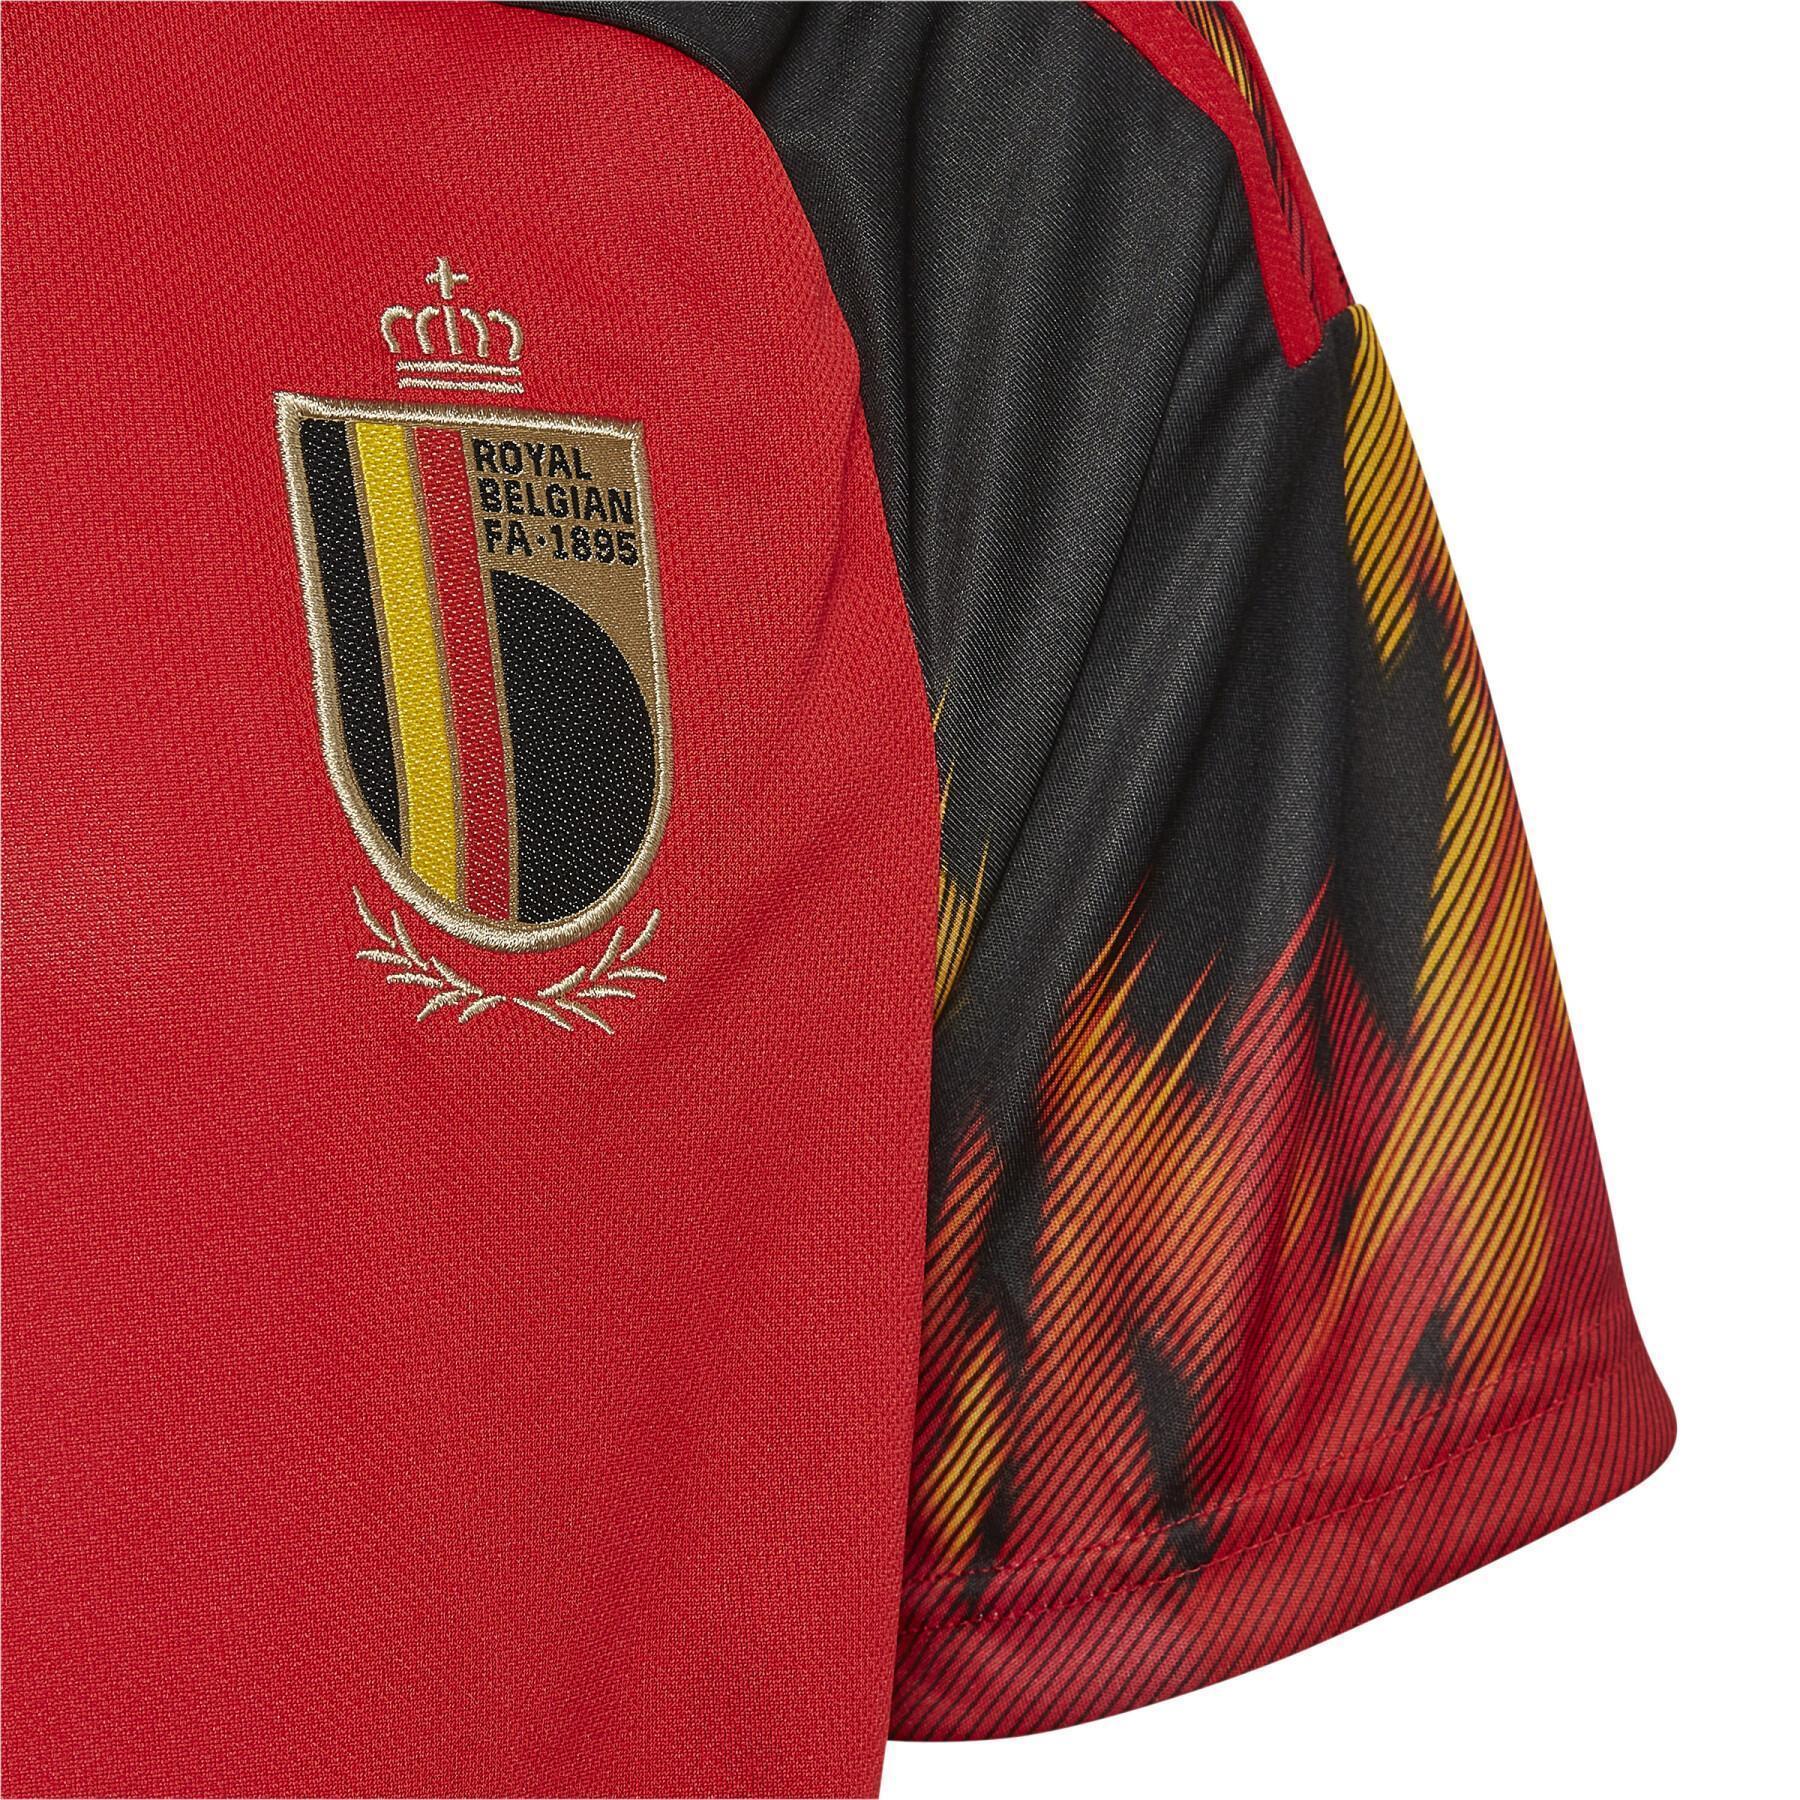 Camiseta primera equipación infantil Belgique 2022/23